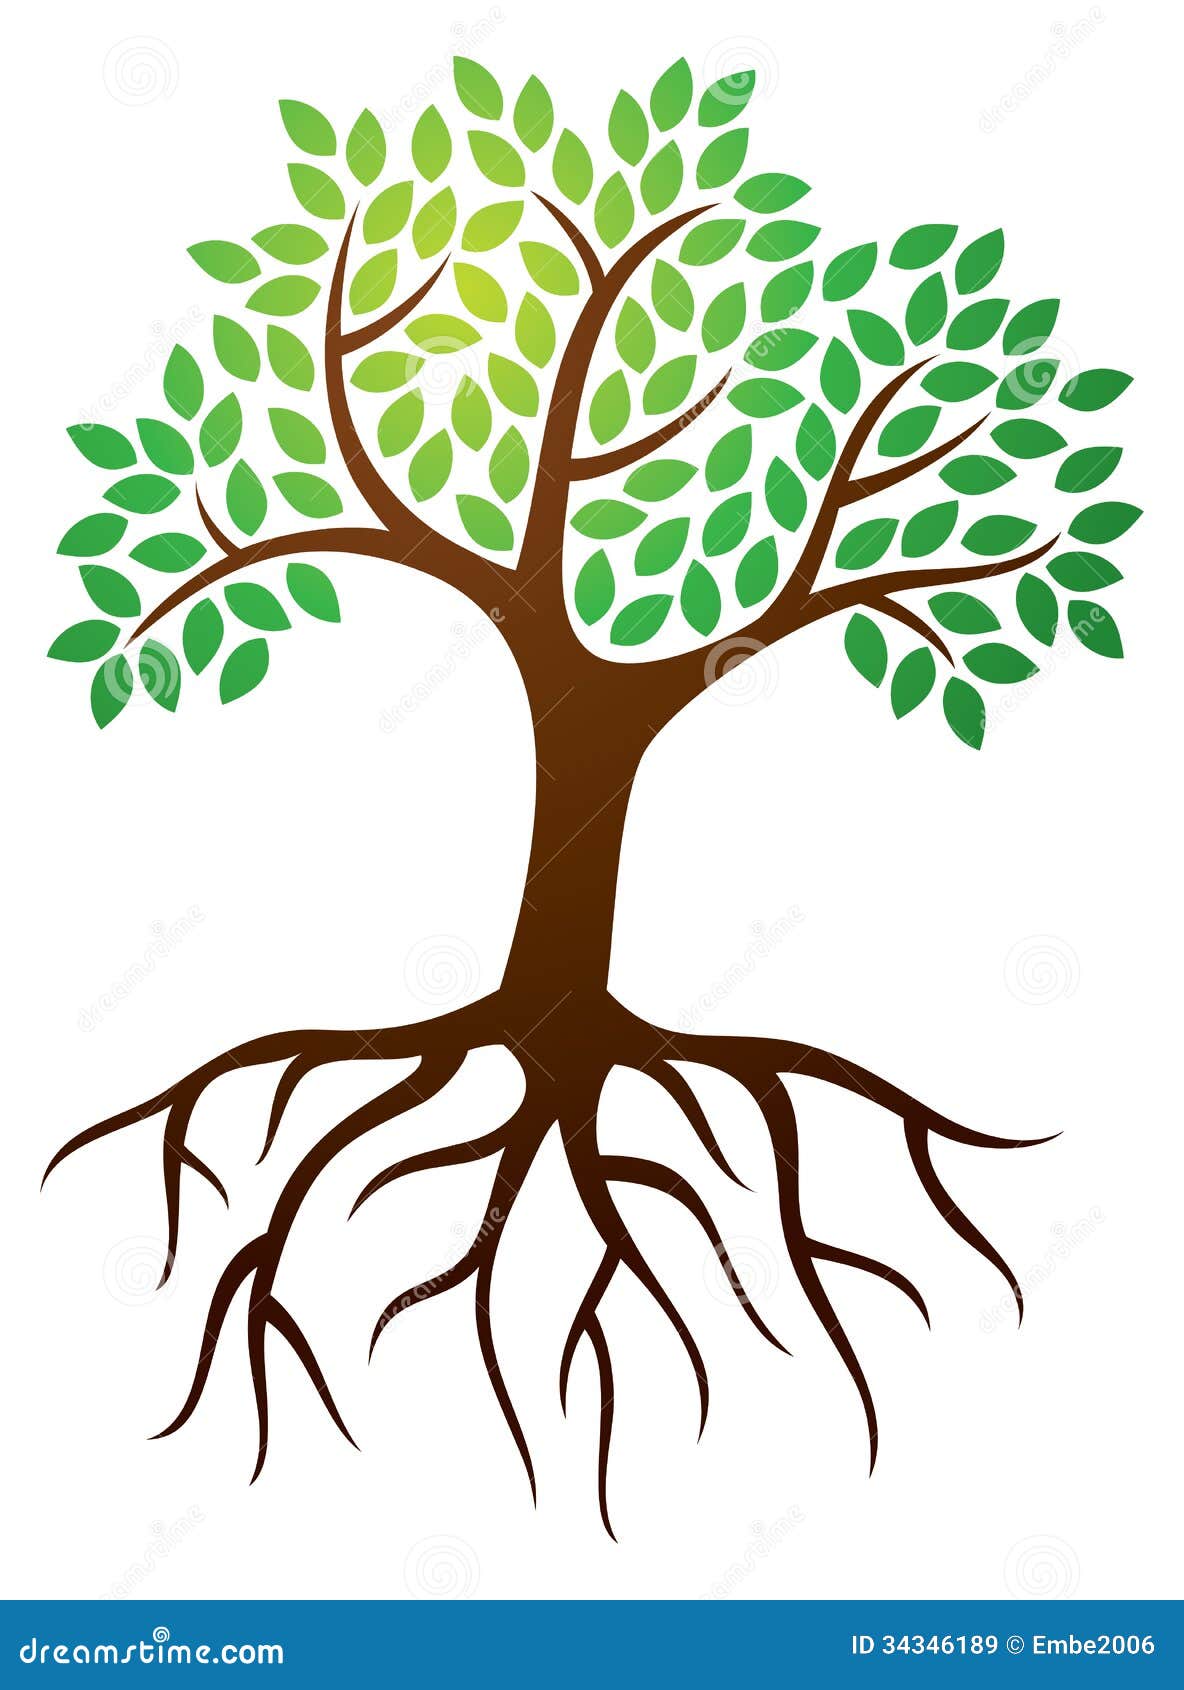 tree roots logo